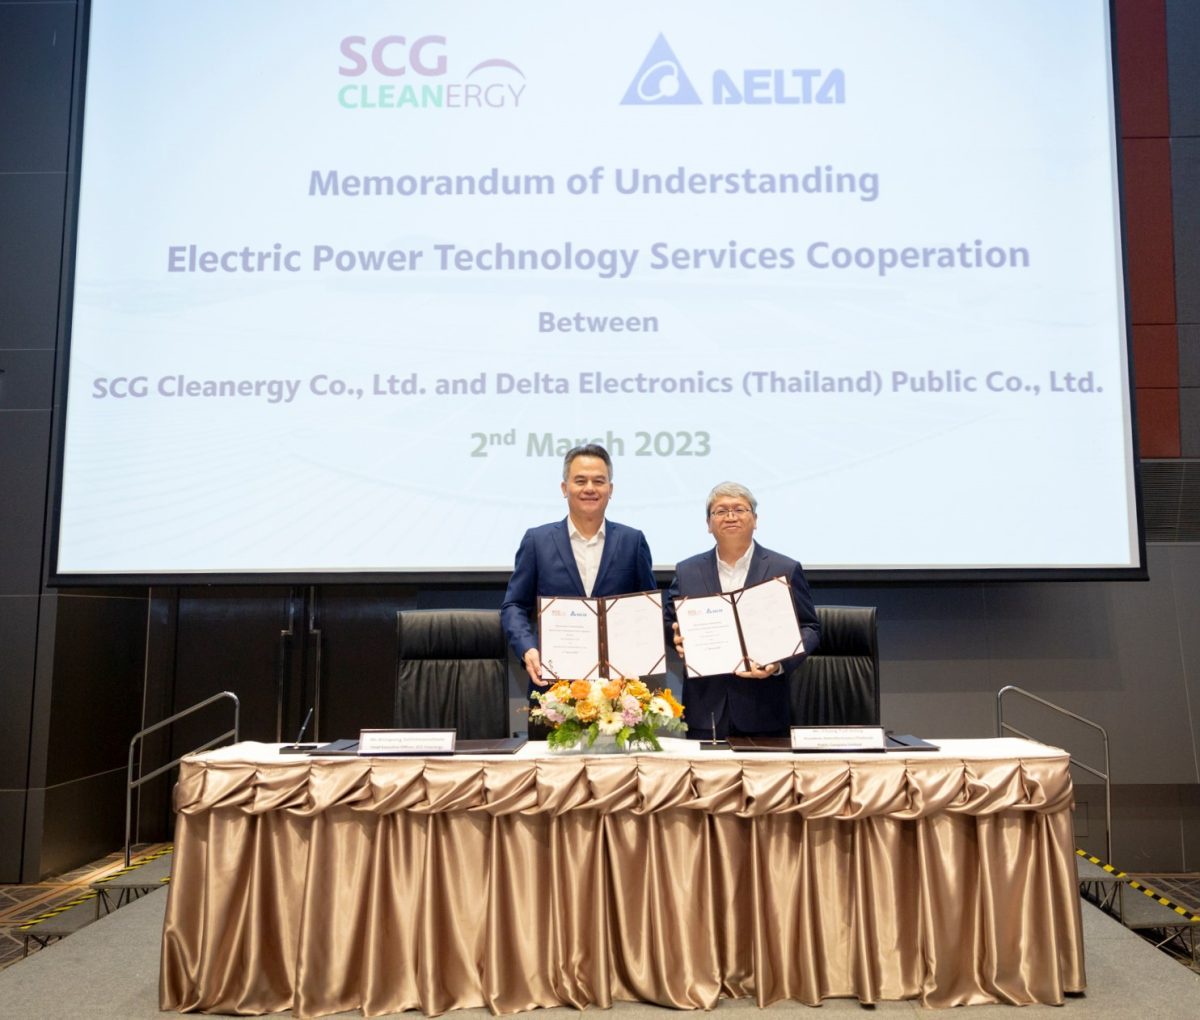 เดลต้า ประเทศไทย และ เอสซีจี คลีนเนอร์ยี่ ลงนามความร่วมมือด้านการบริการพลังงานทดแทน เพื่อเป้าหมาย RE100 และการปล่อยคาร์บอนสุทธิเป็นศูนย์